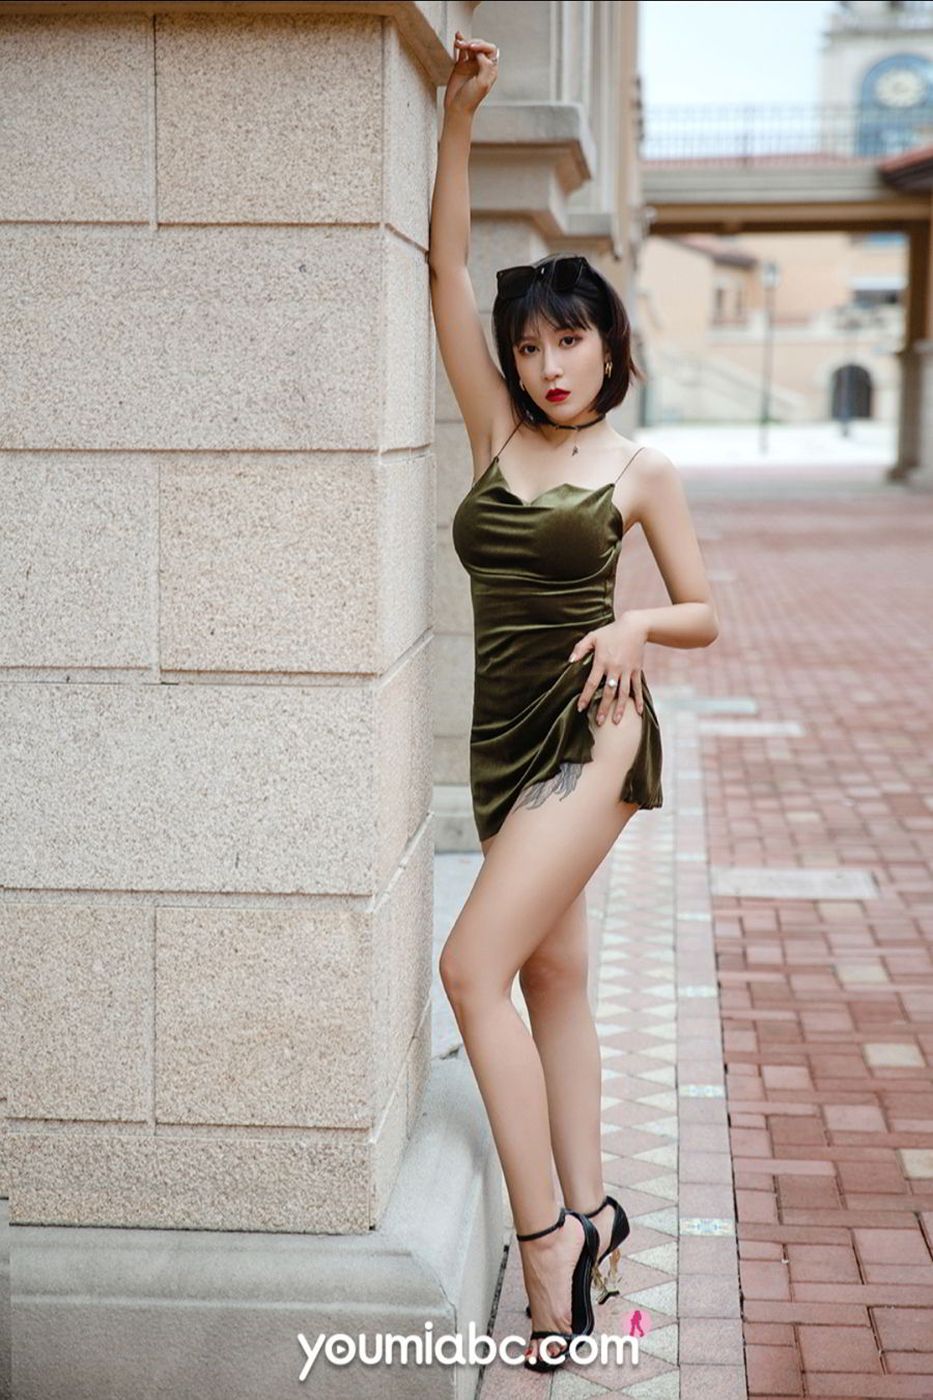 美女模特安妮斯朵拉墨绿色吊裙S型身材极致写真